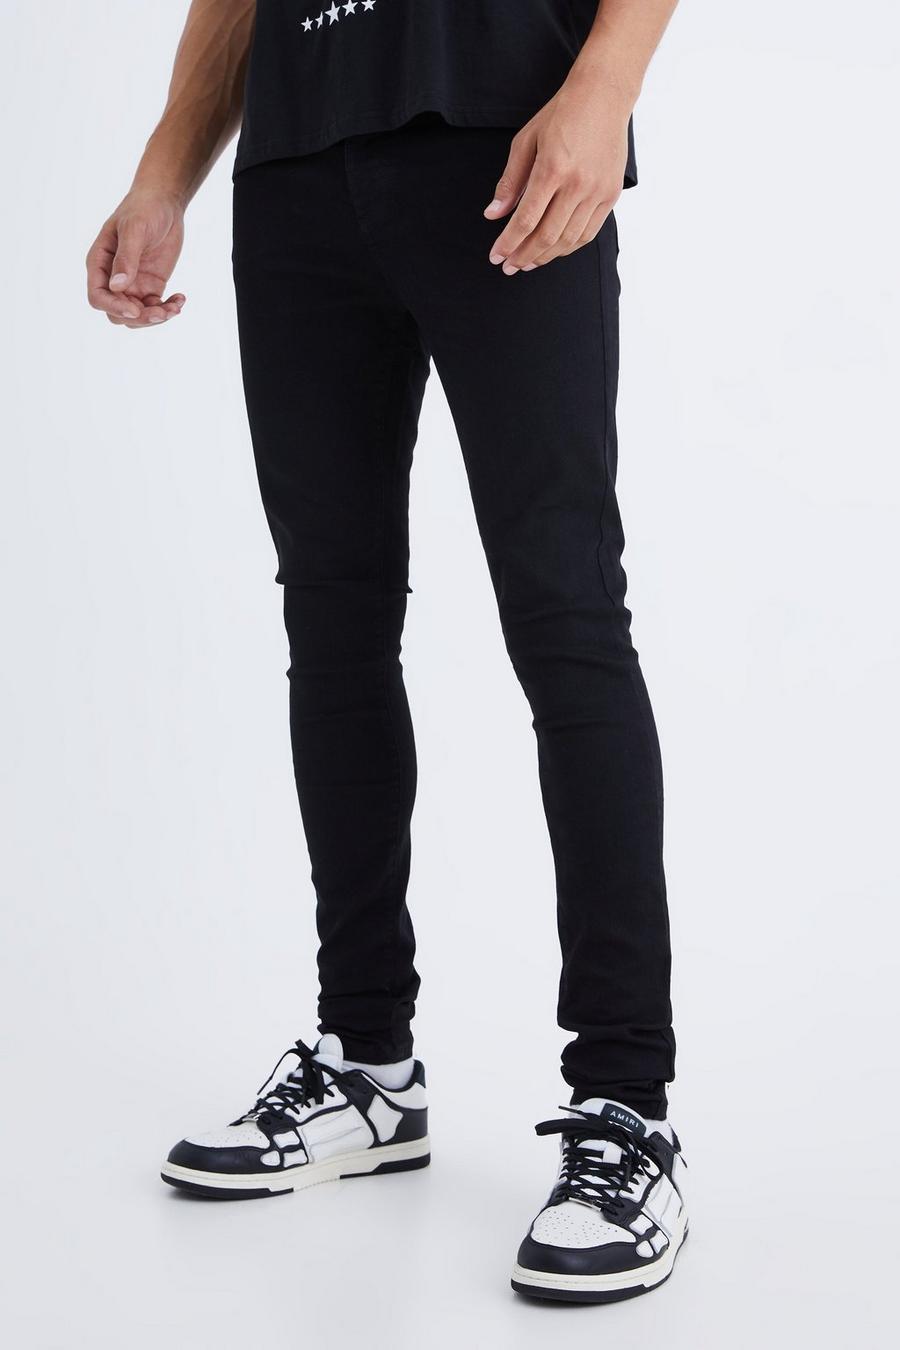 Jeans Tall Super Skinny Fit in Stretch, True black